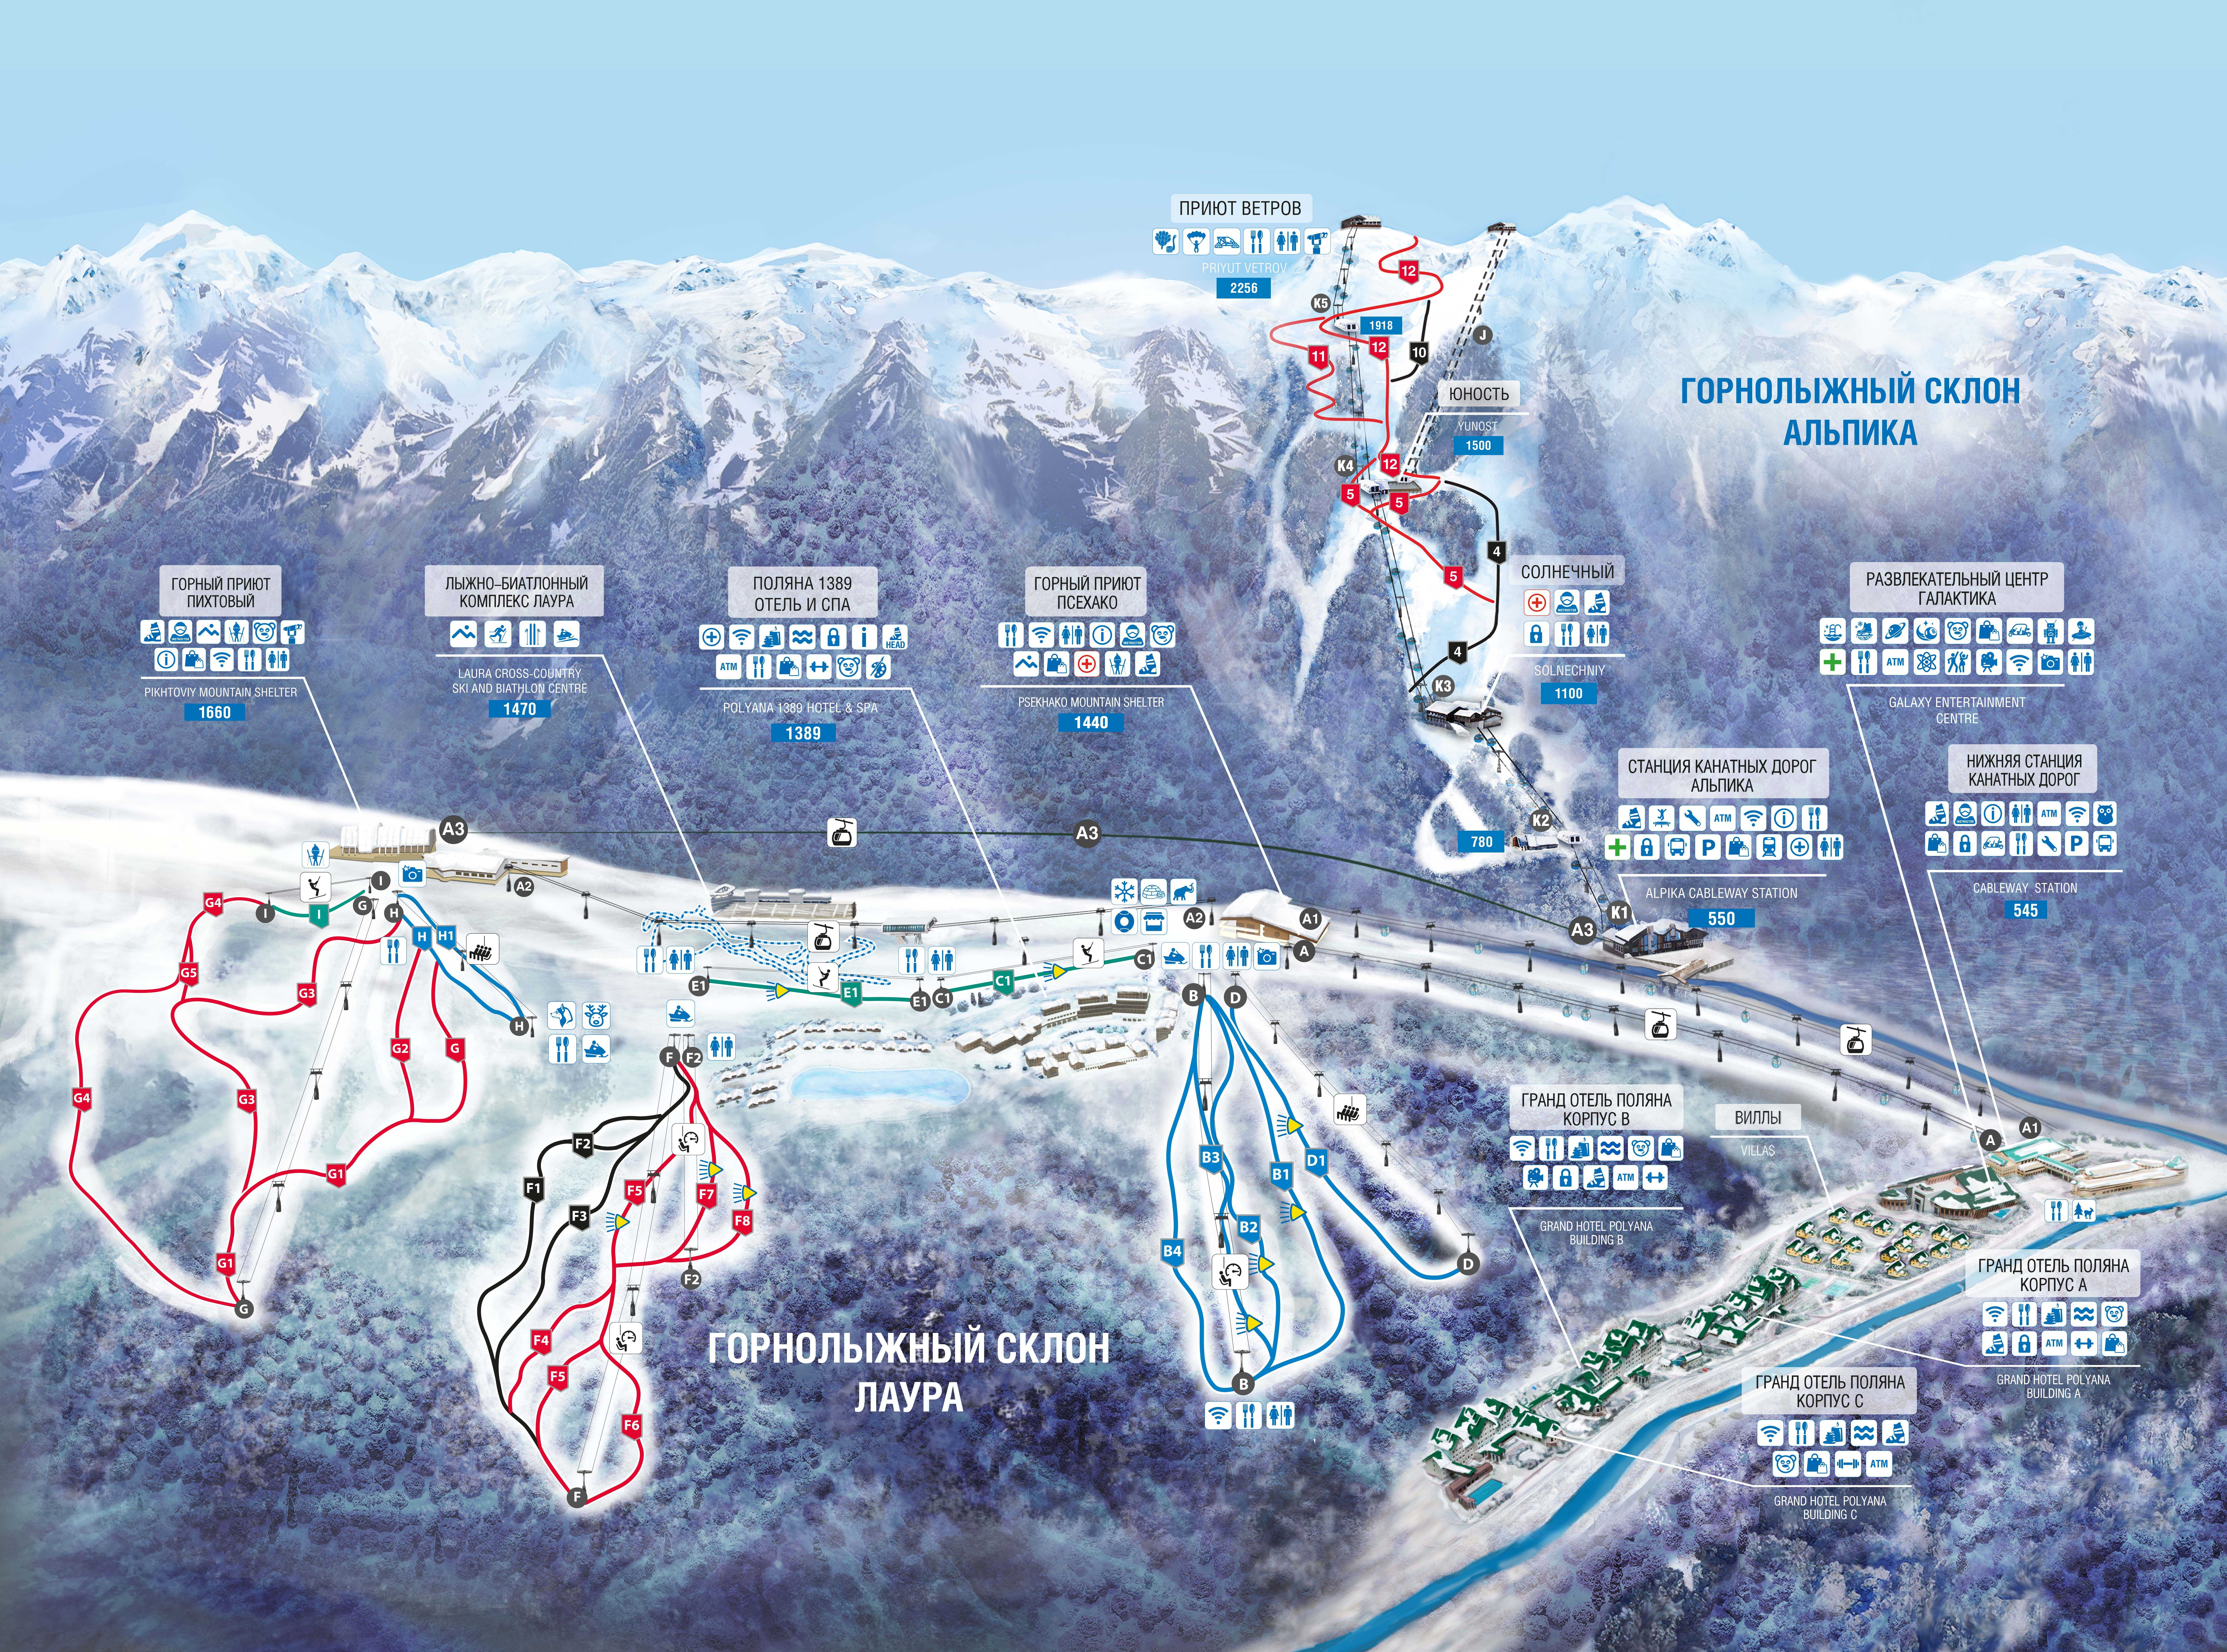 Альпика - один из склонов горно-туристического центра Газпром в Красной Поляне Эсто-Садок Склон доступен круглогодично